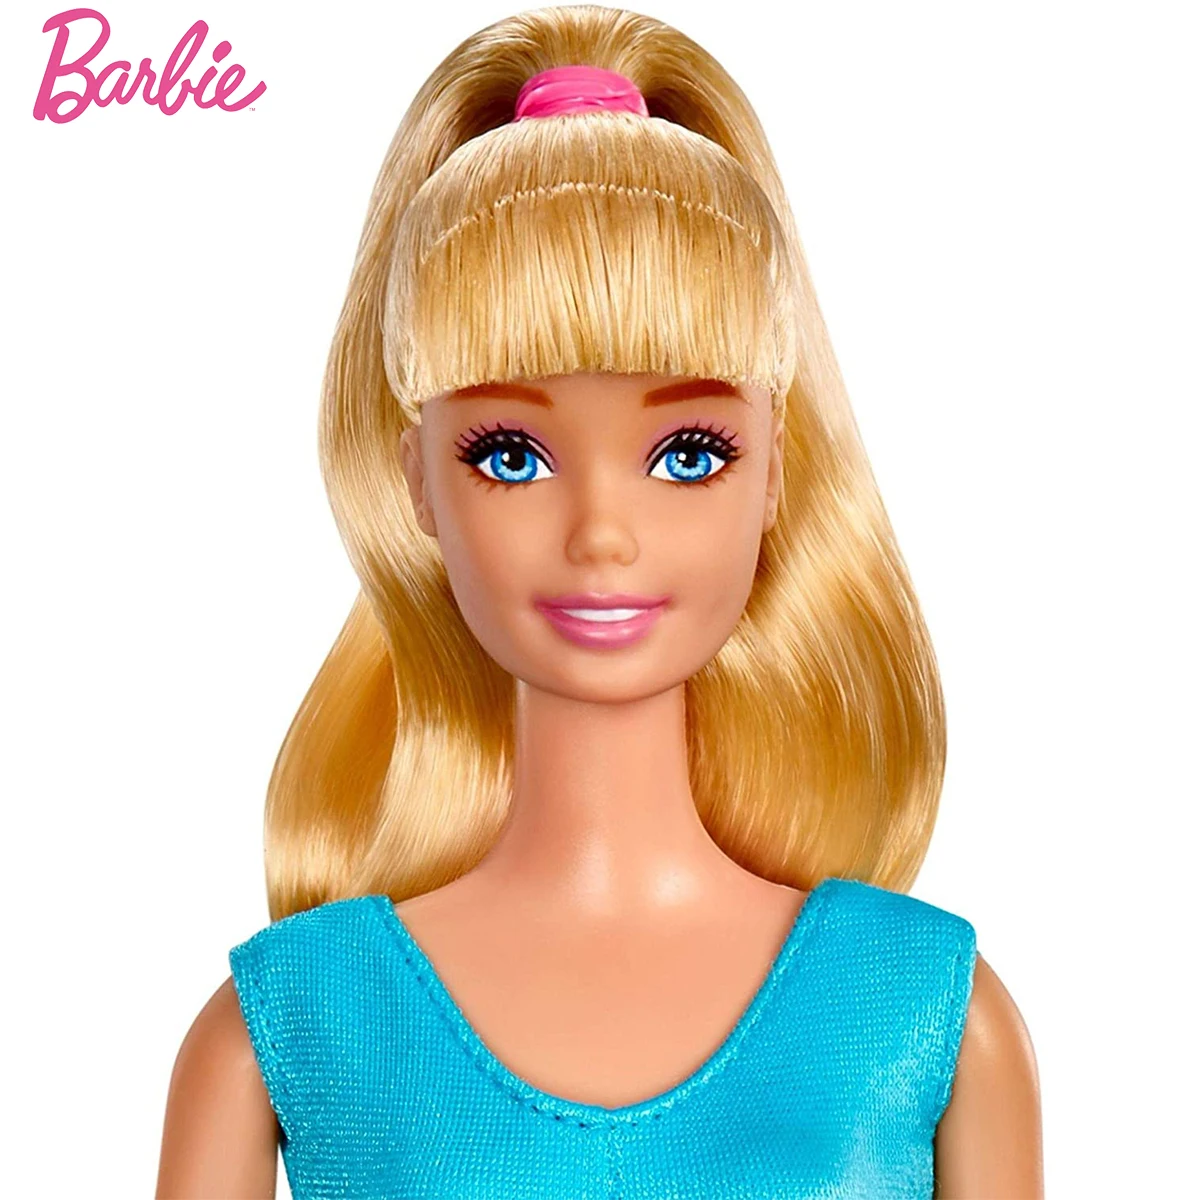 larynx Wrinkles exposure Jocuri barbie originale n. o.jucarie disney pixar povestea 4 papusa barbie  pentru copii copii, fete, cadou de ziua gfl78 vanzare < Papusi & Accesorii  \ Bivoli.ro